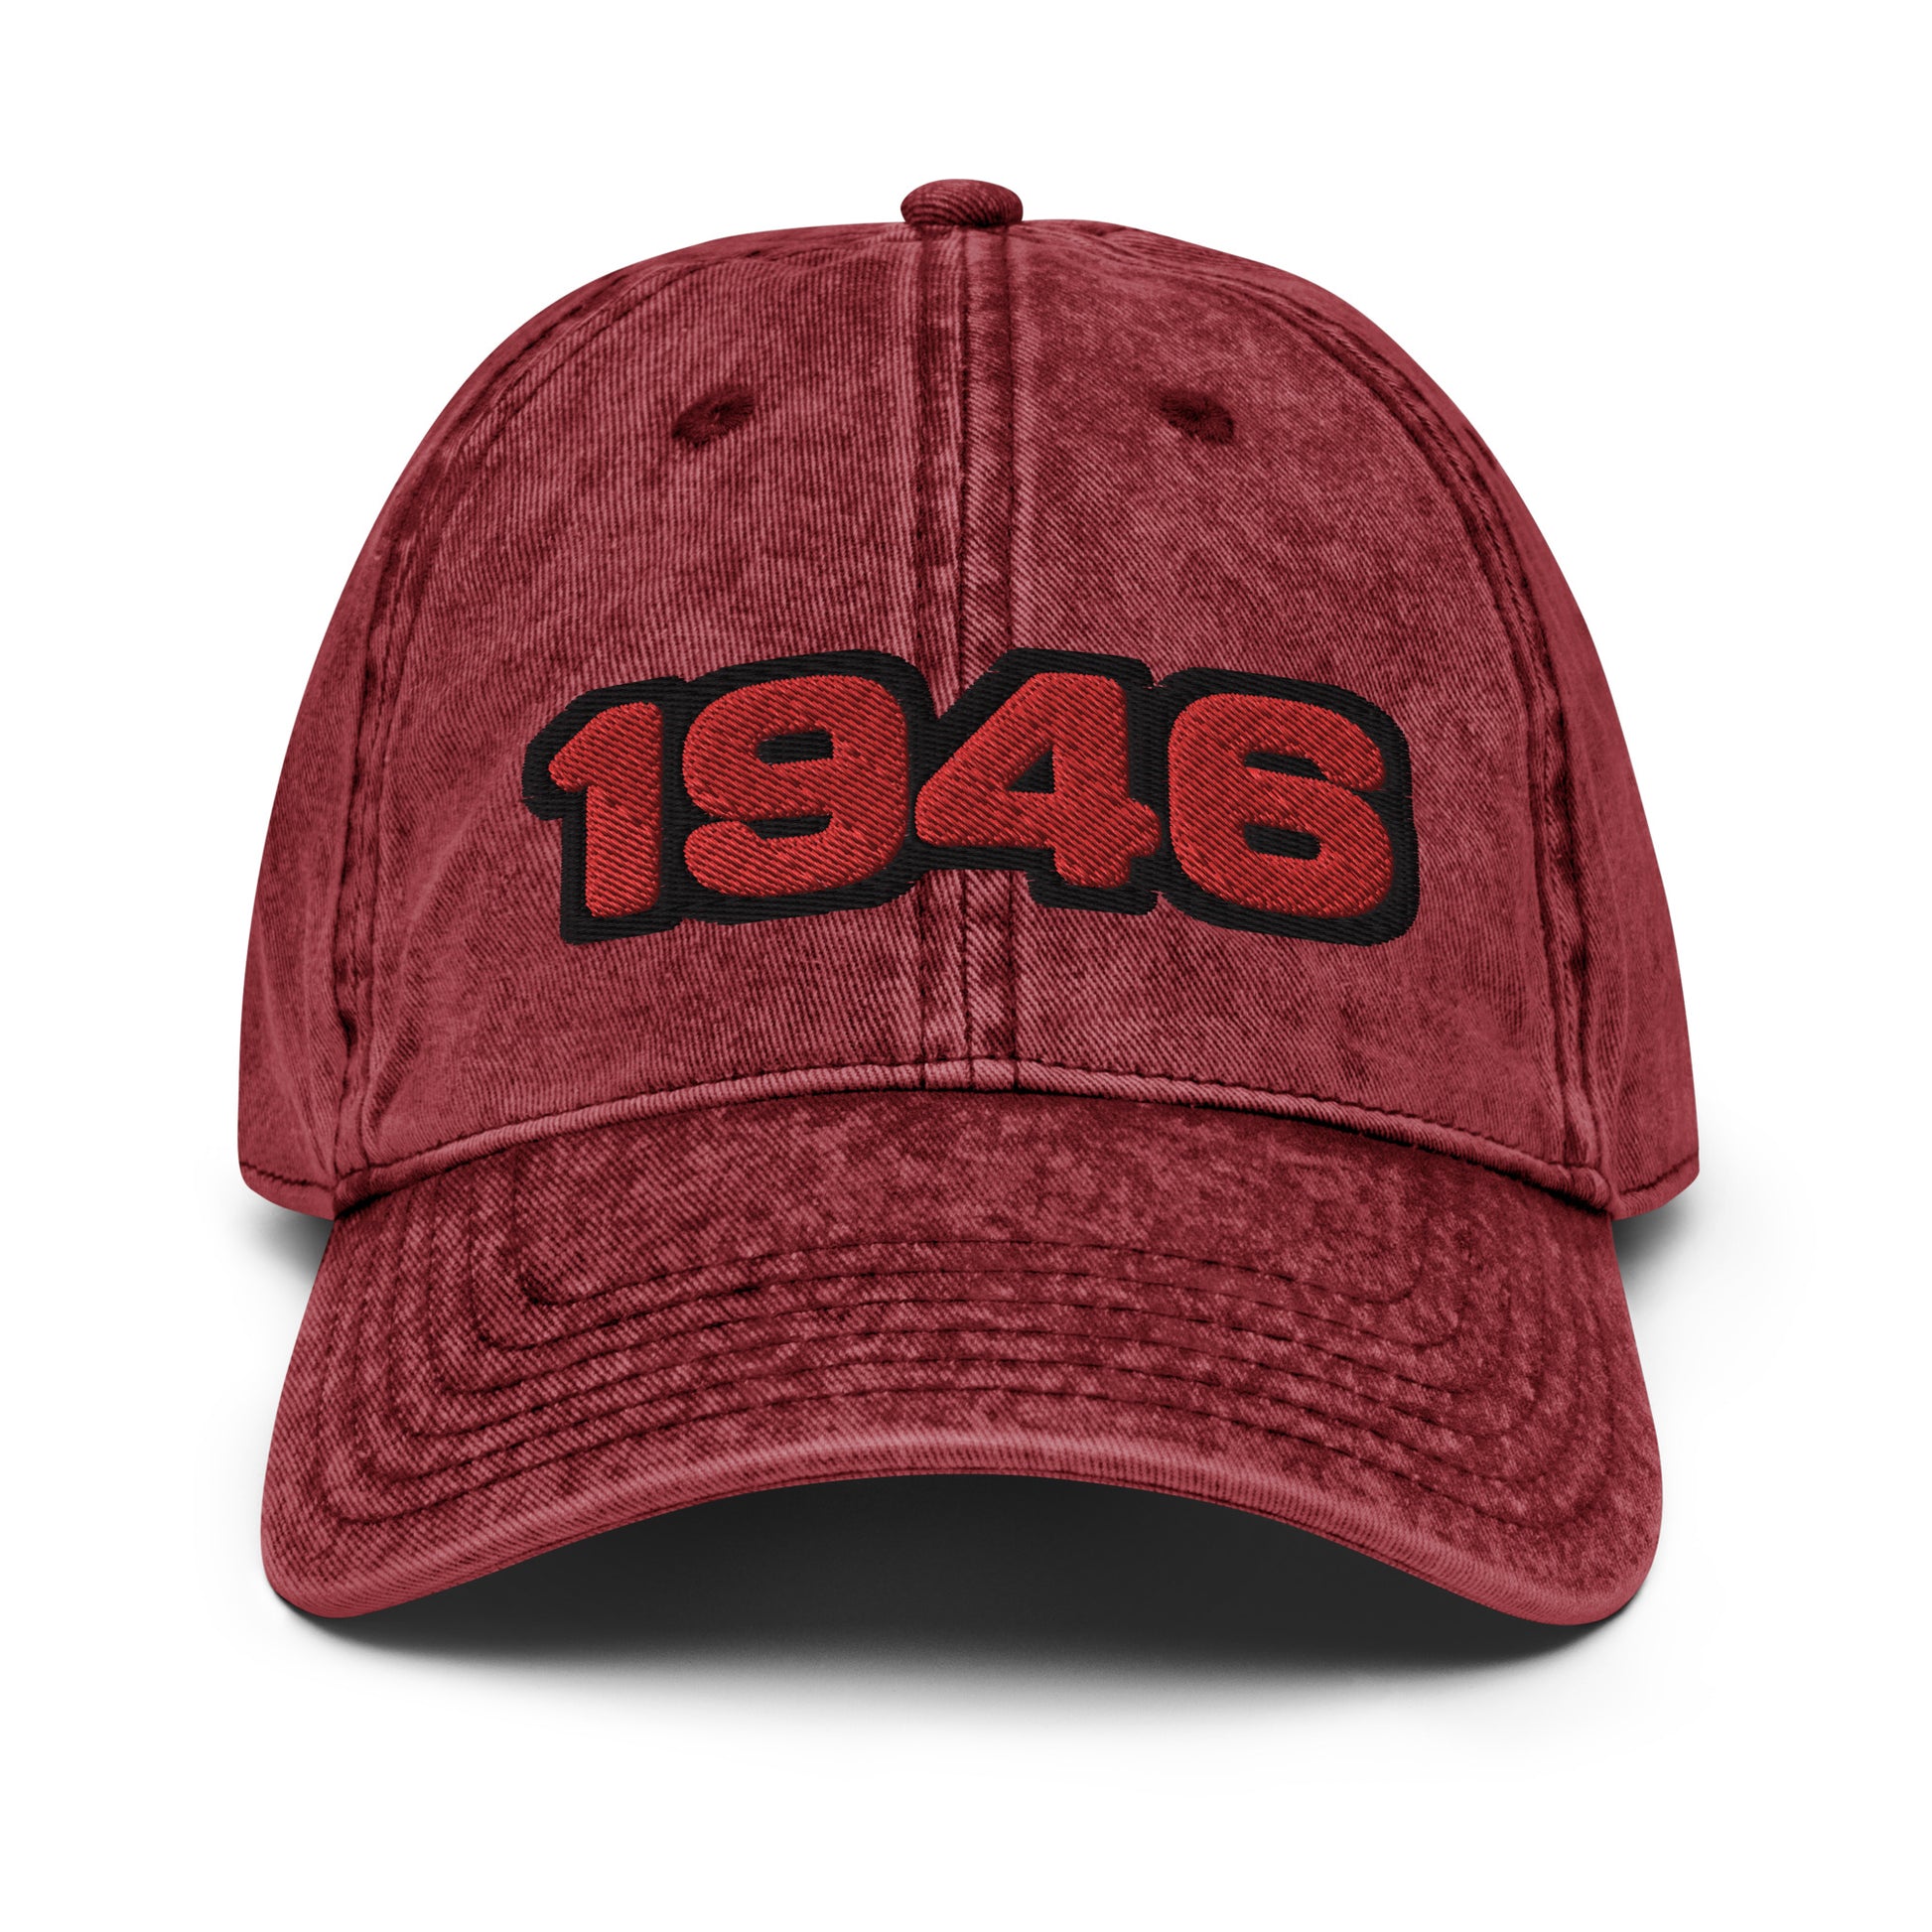 1946 hat / San Francisco hat / 49ers hat / Vintage Cotton Twill Cap